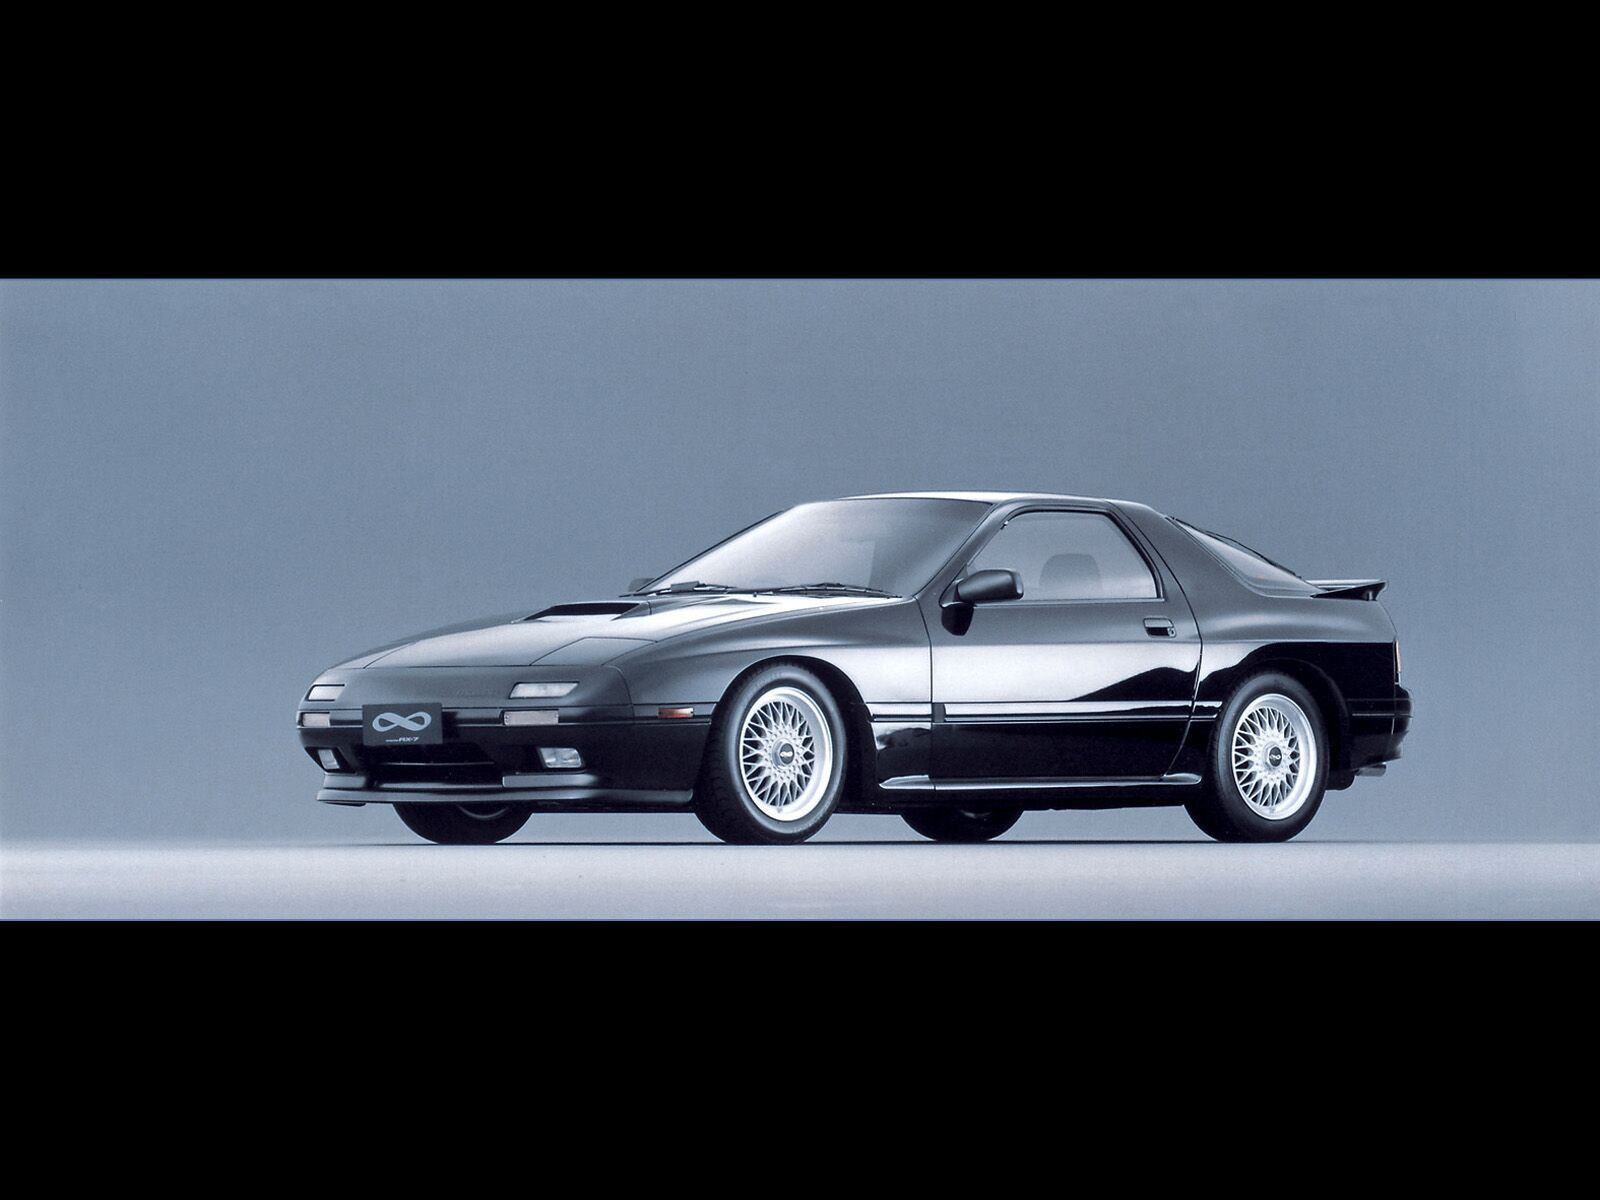 2001 Mazda RX7